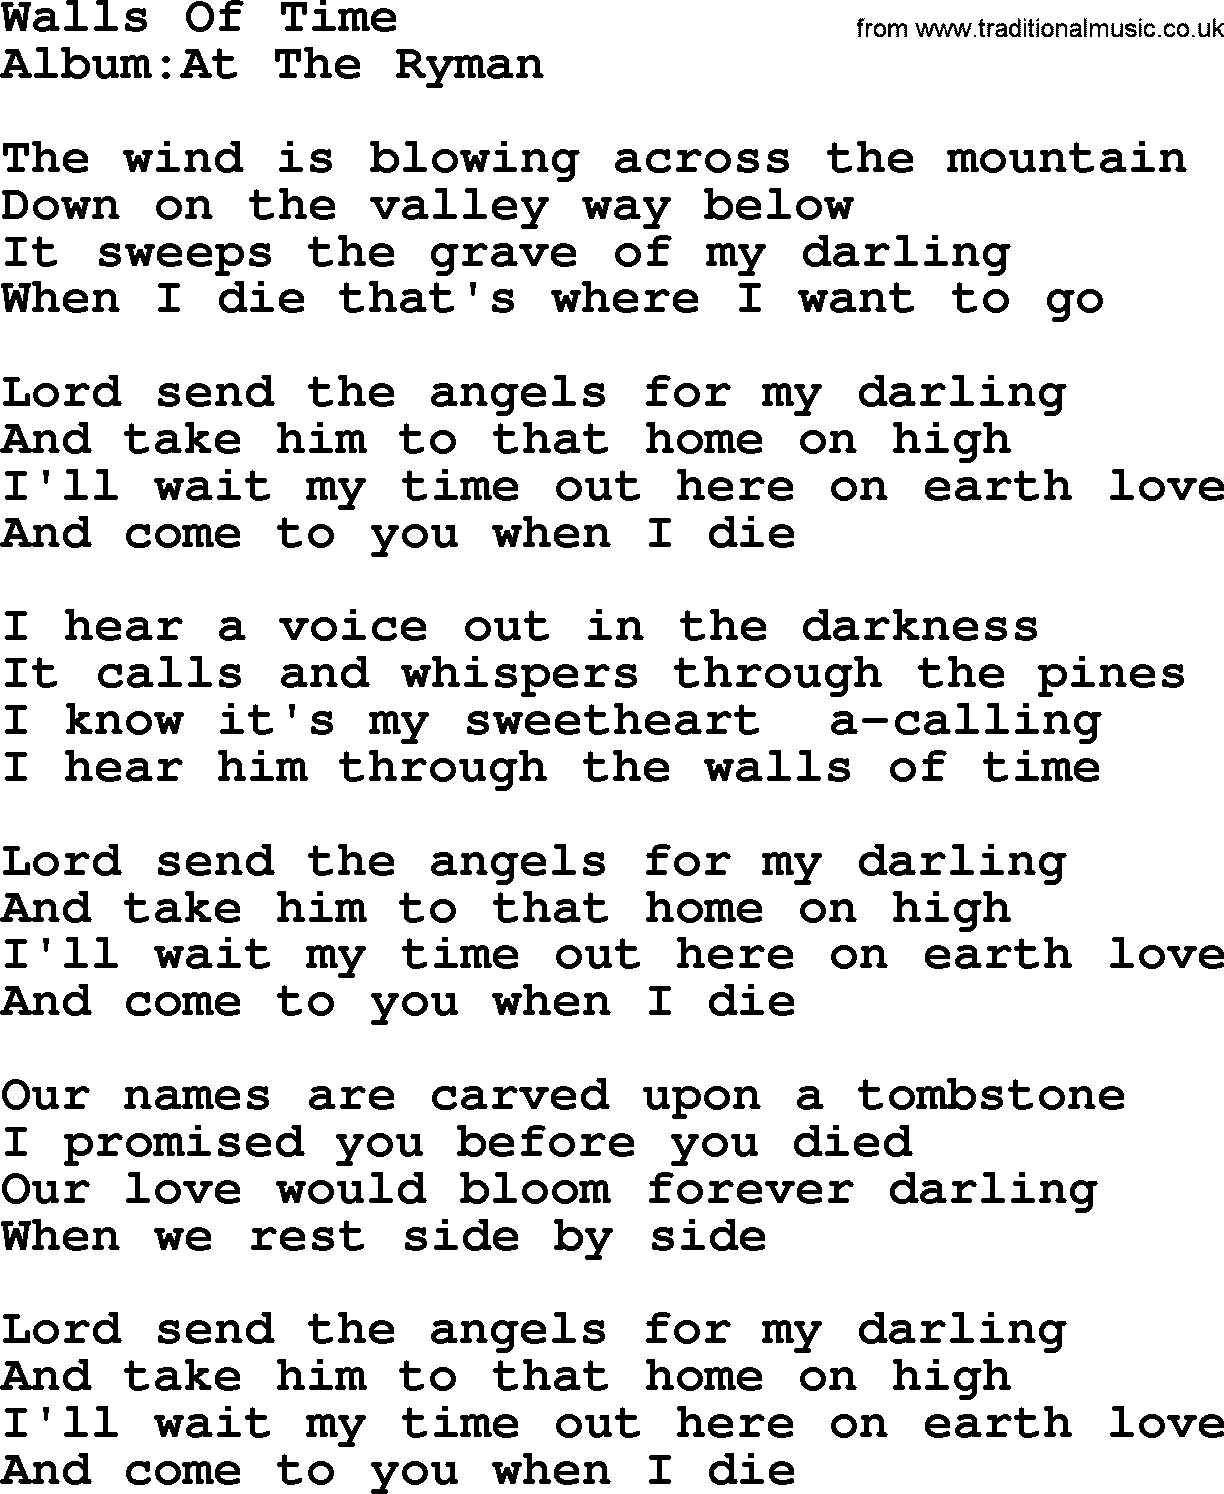 Emmylou Harris song: Walls Of Time lyrics